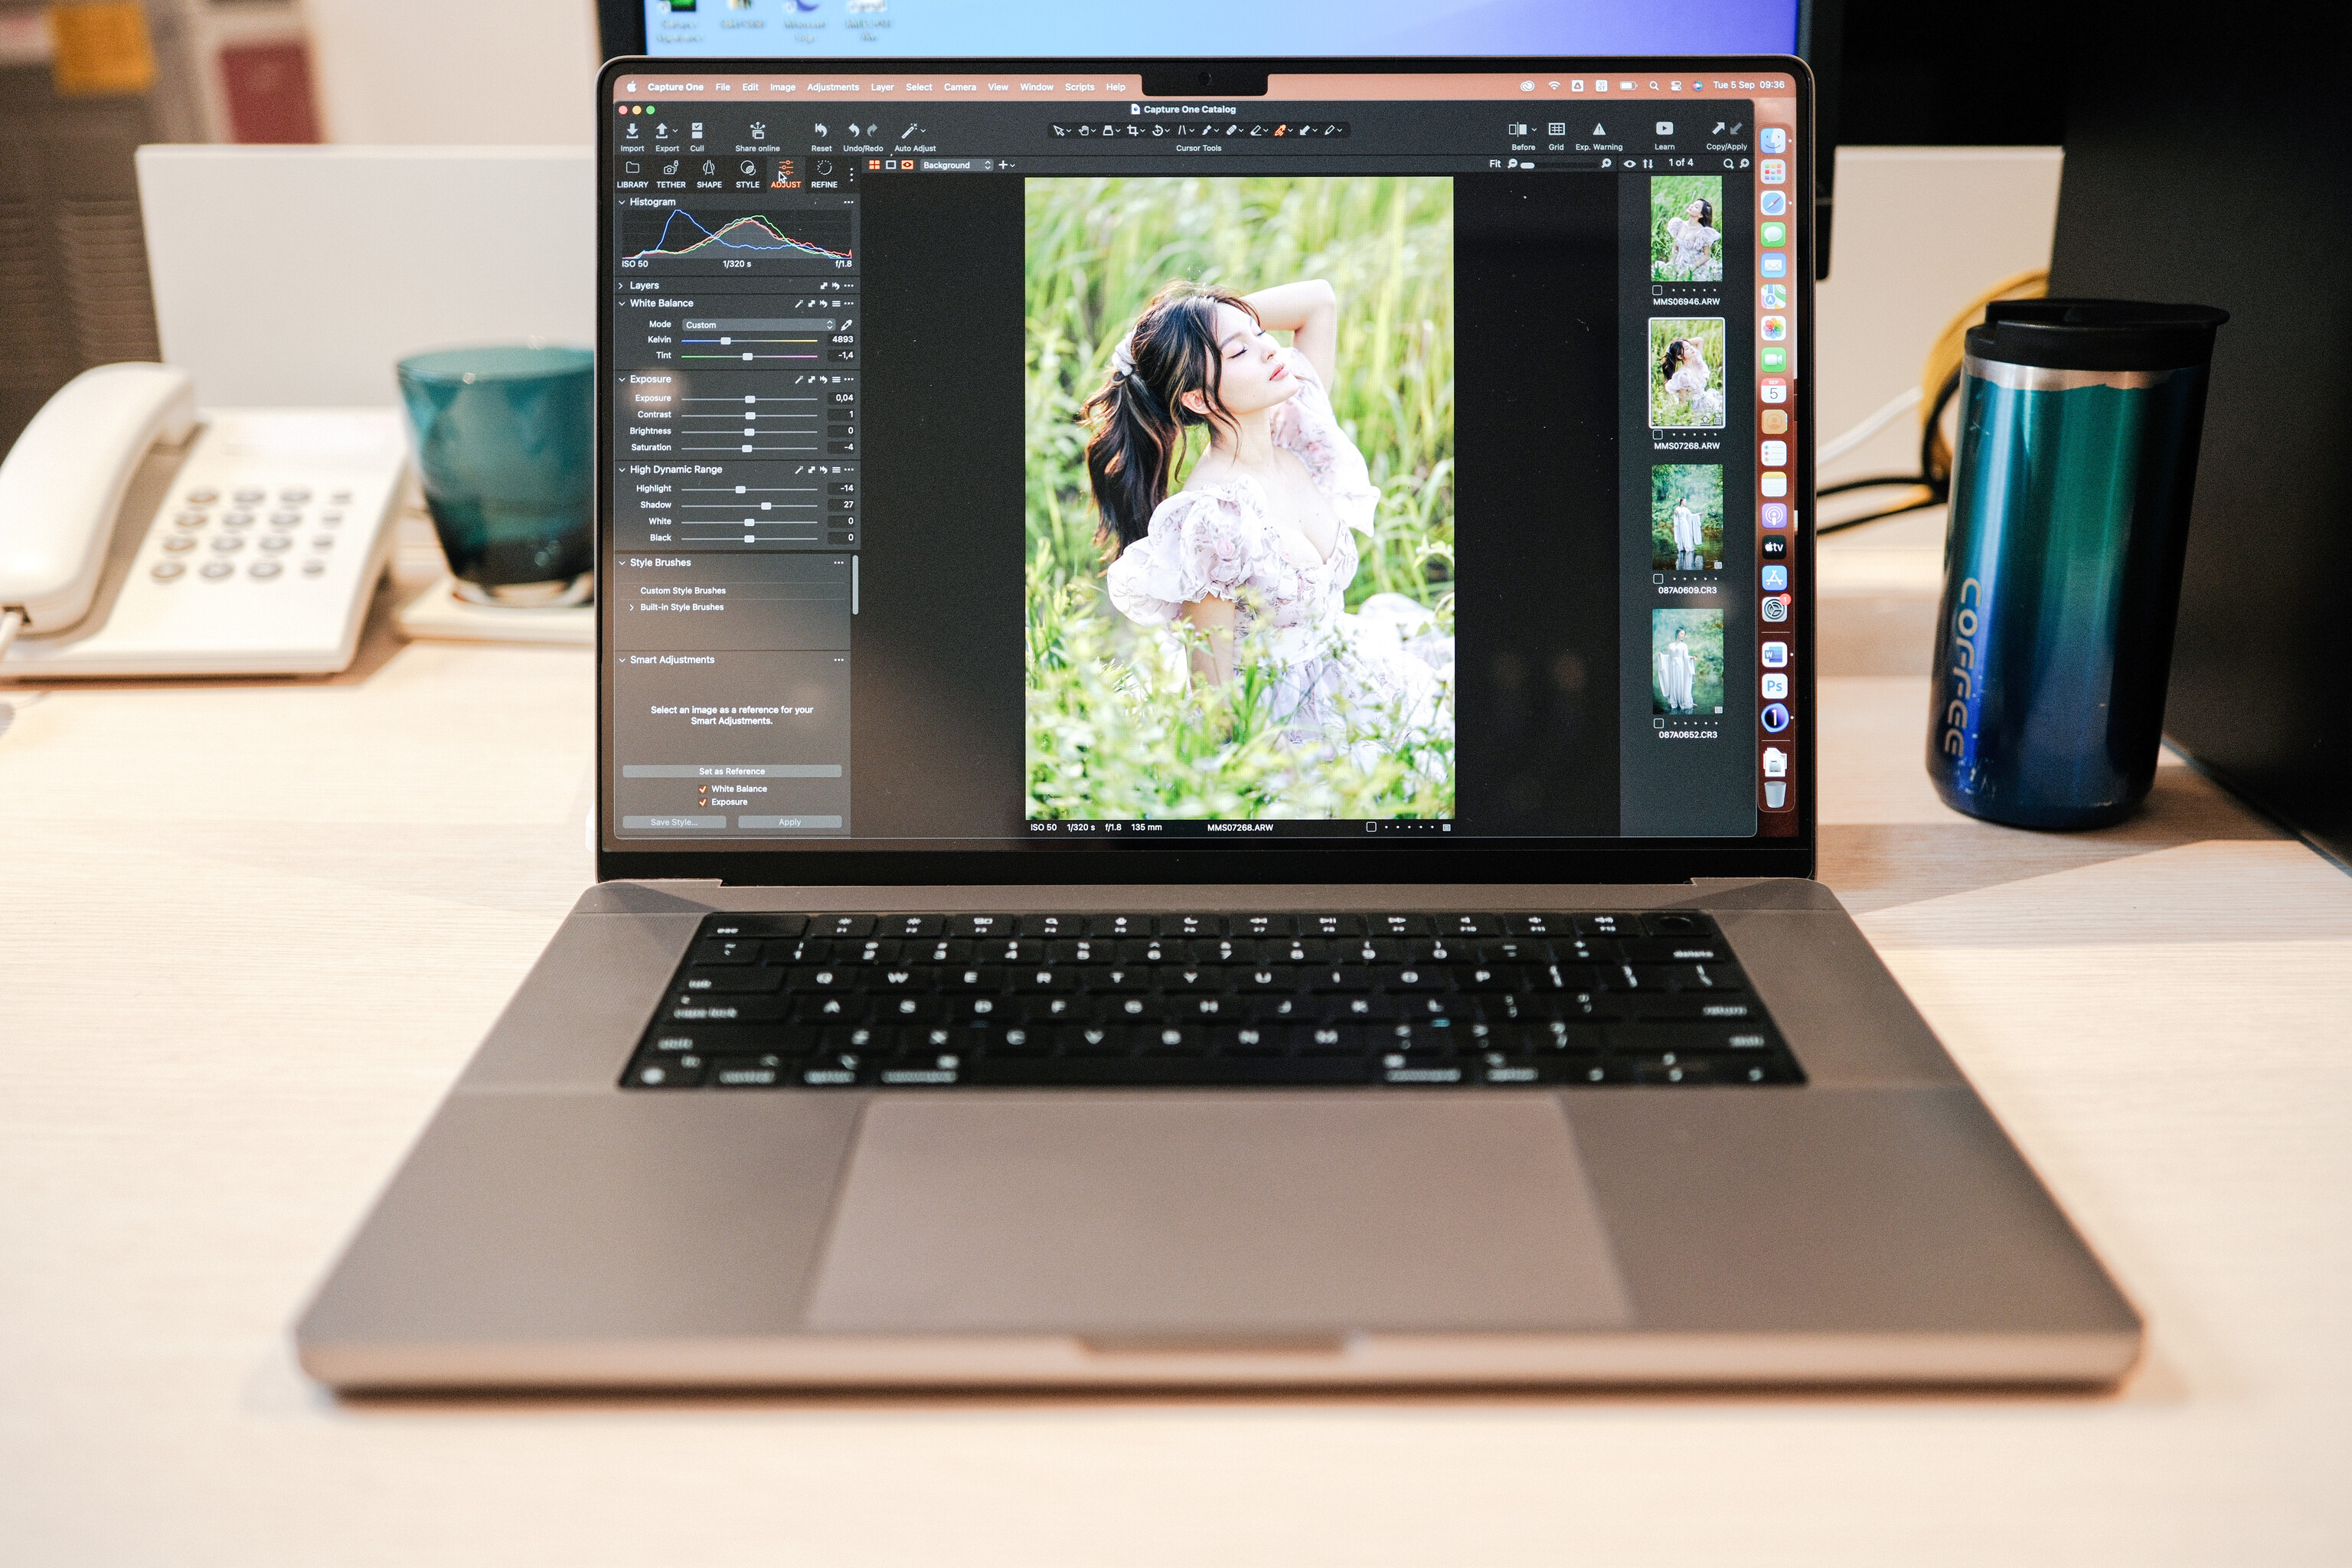 Lý do mua MacBook Pro 16 inch M1 2021: Mua vì mình làm về mảng Photography, chủ yếu chỉnh sửa hình